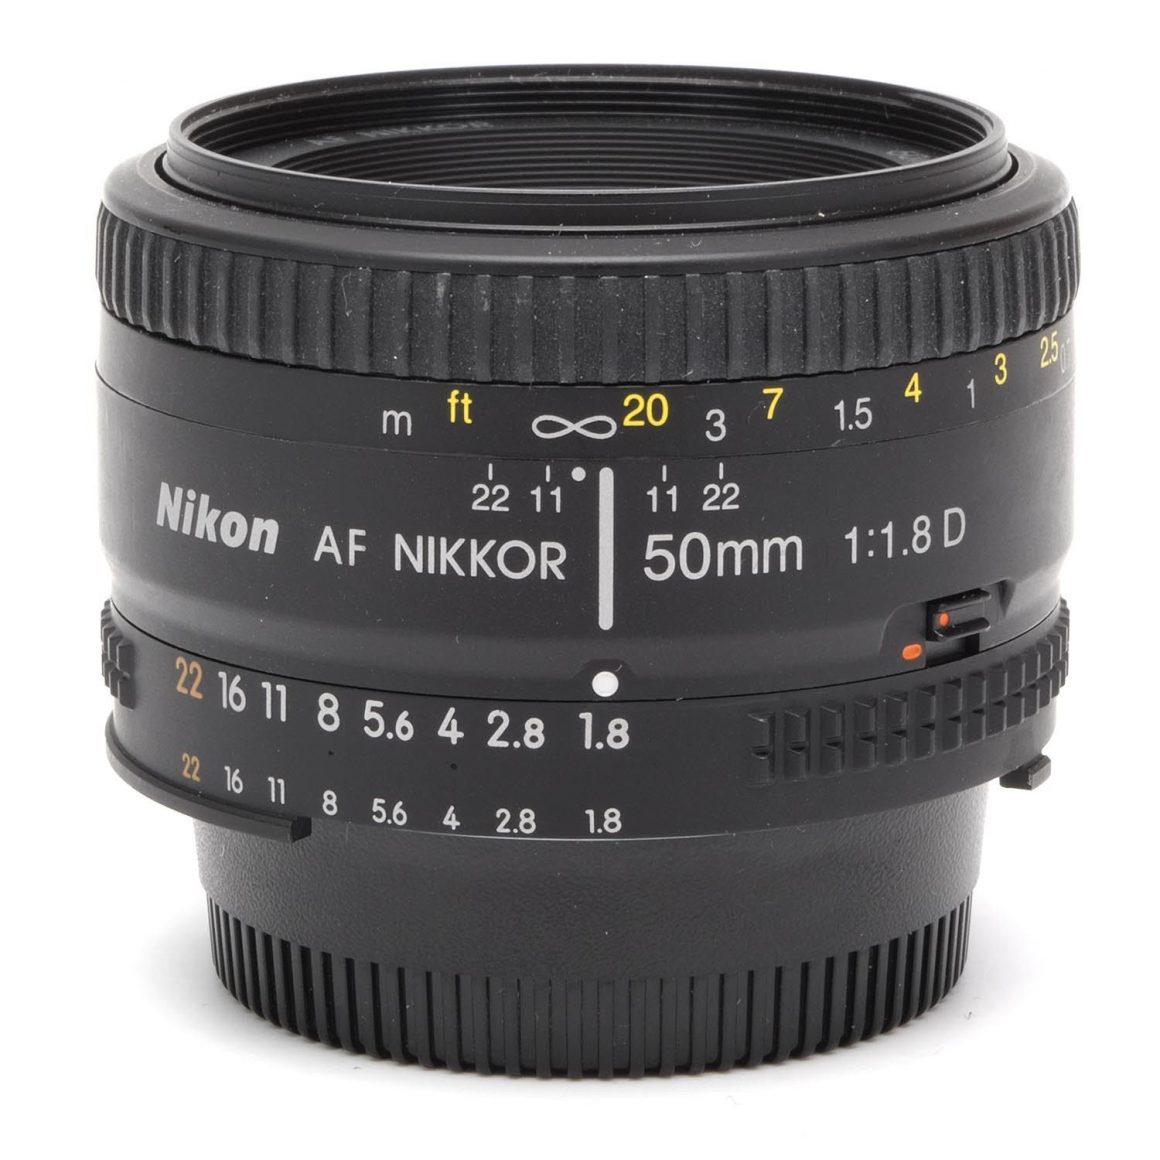 Nikon AF NIKKOR 50mm F/1.8D